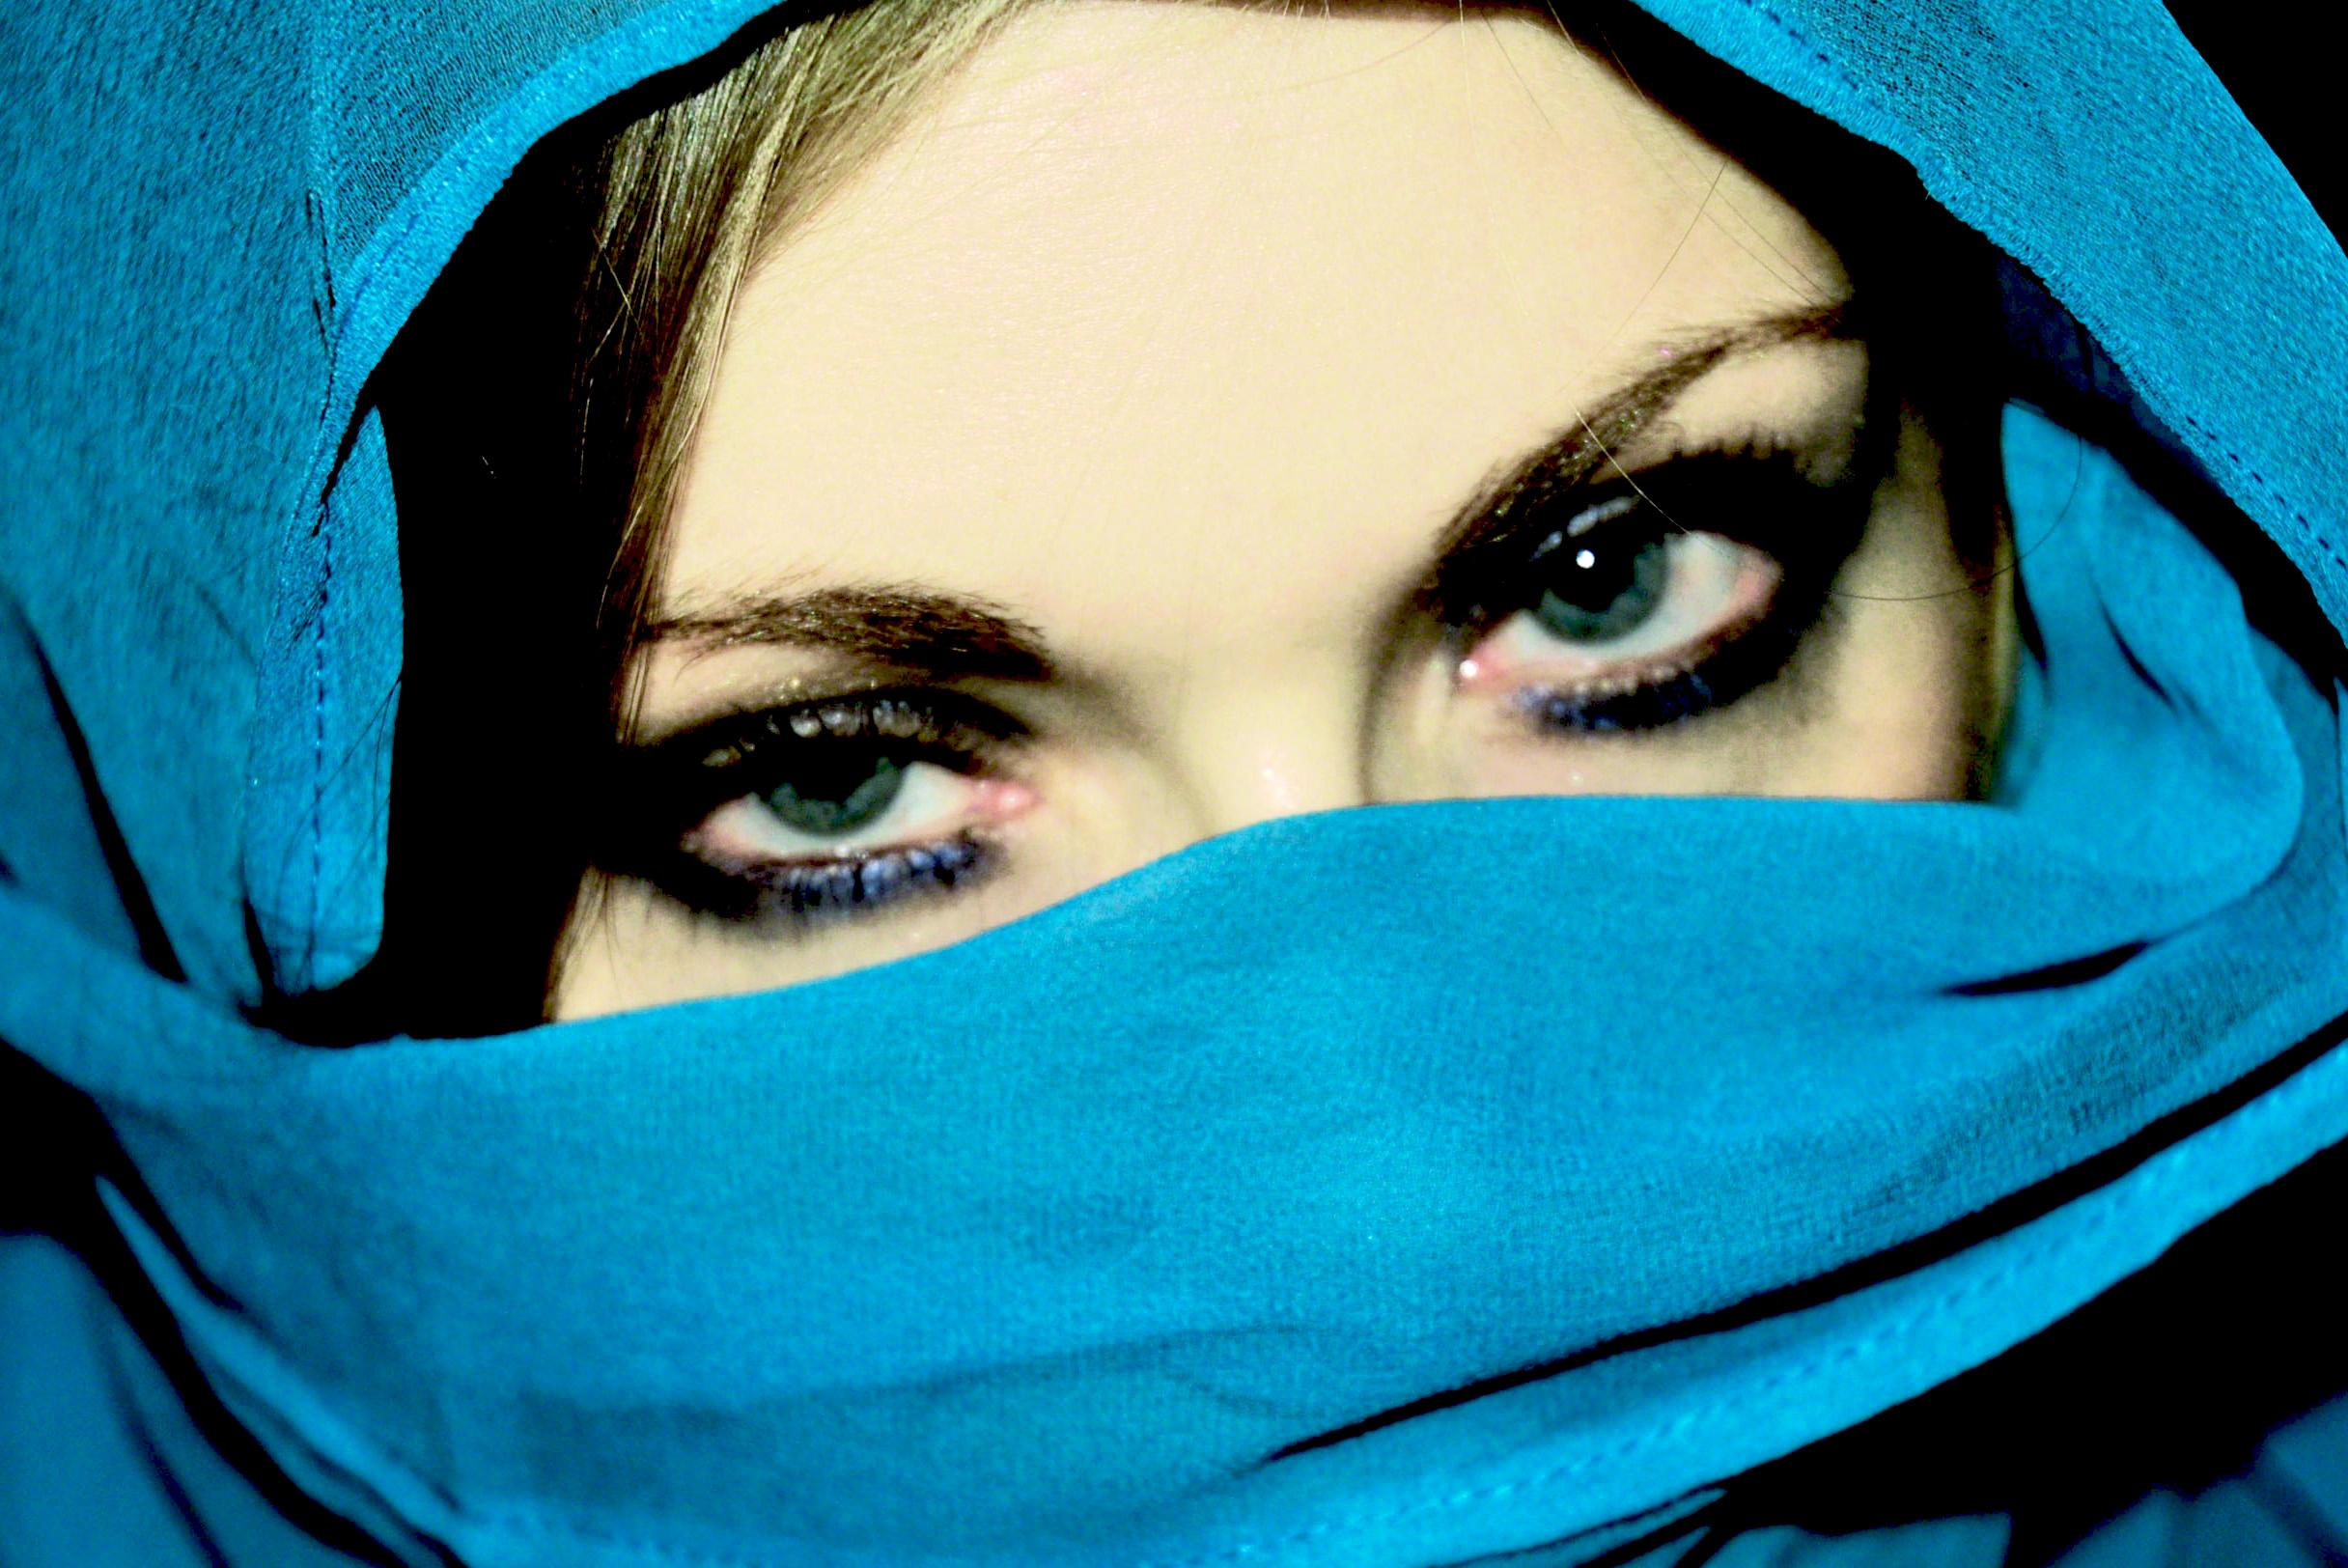 niqab eyes wallpaper,face,blue,eyebrow,eye,head